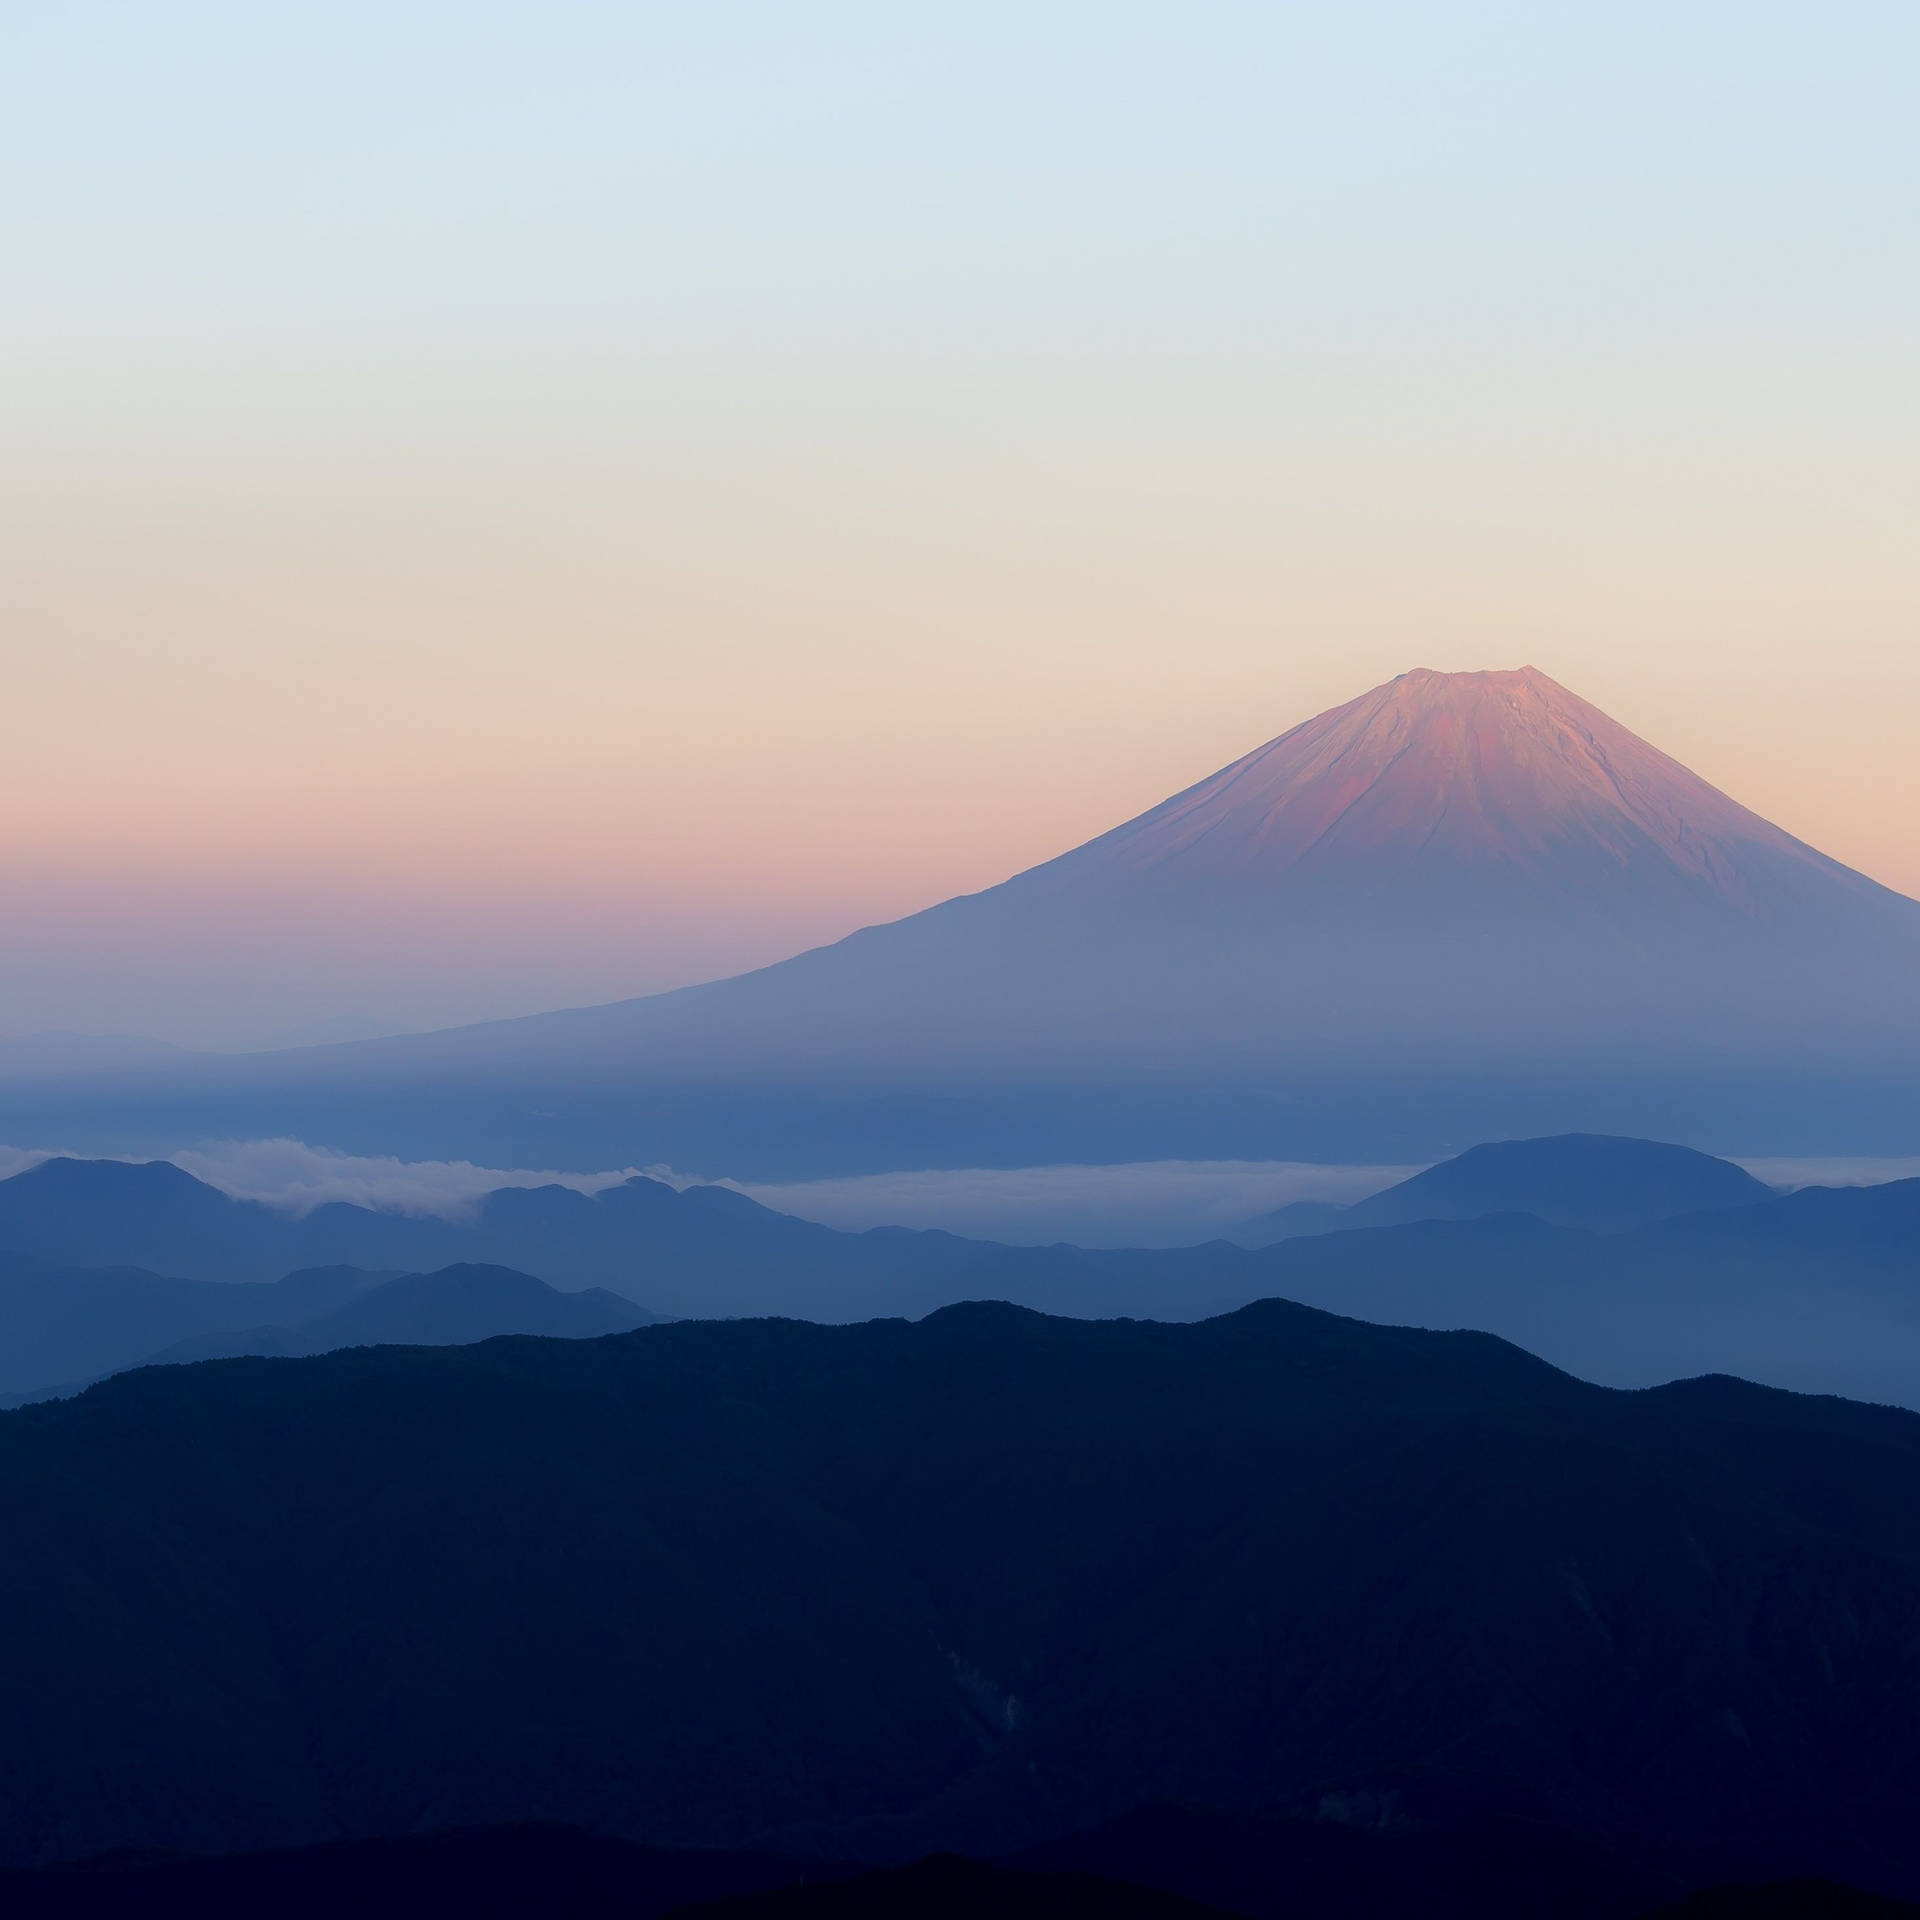 4k Ipad Mt. Fuji Wallpaper